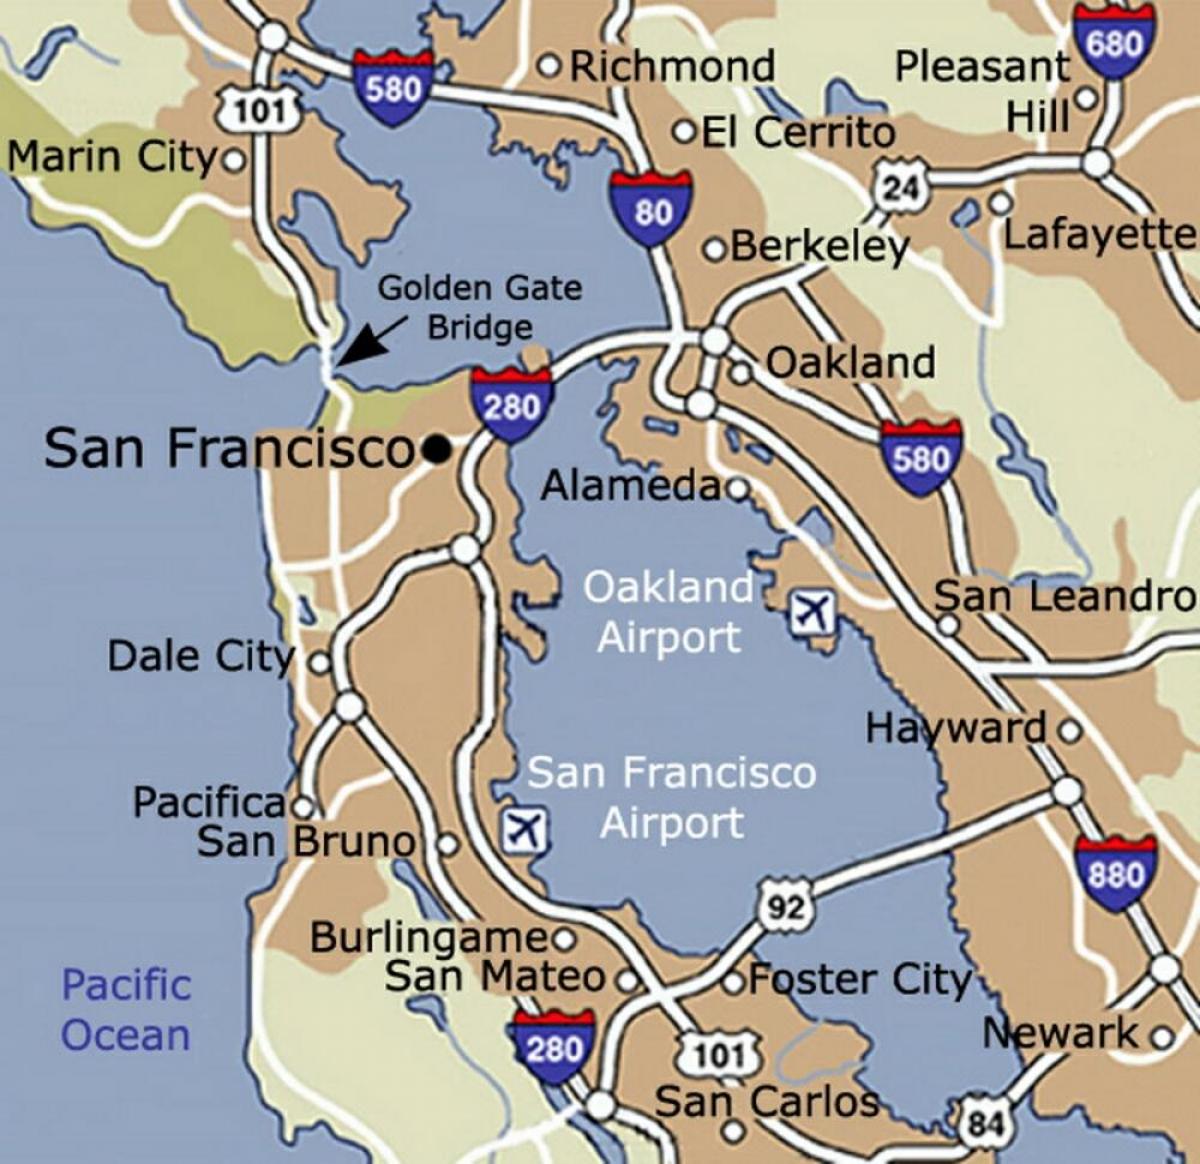 Kartta San Francisco airport ja ympäröivän alueen